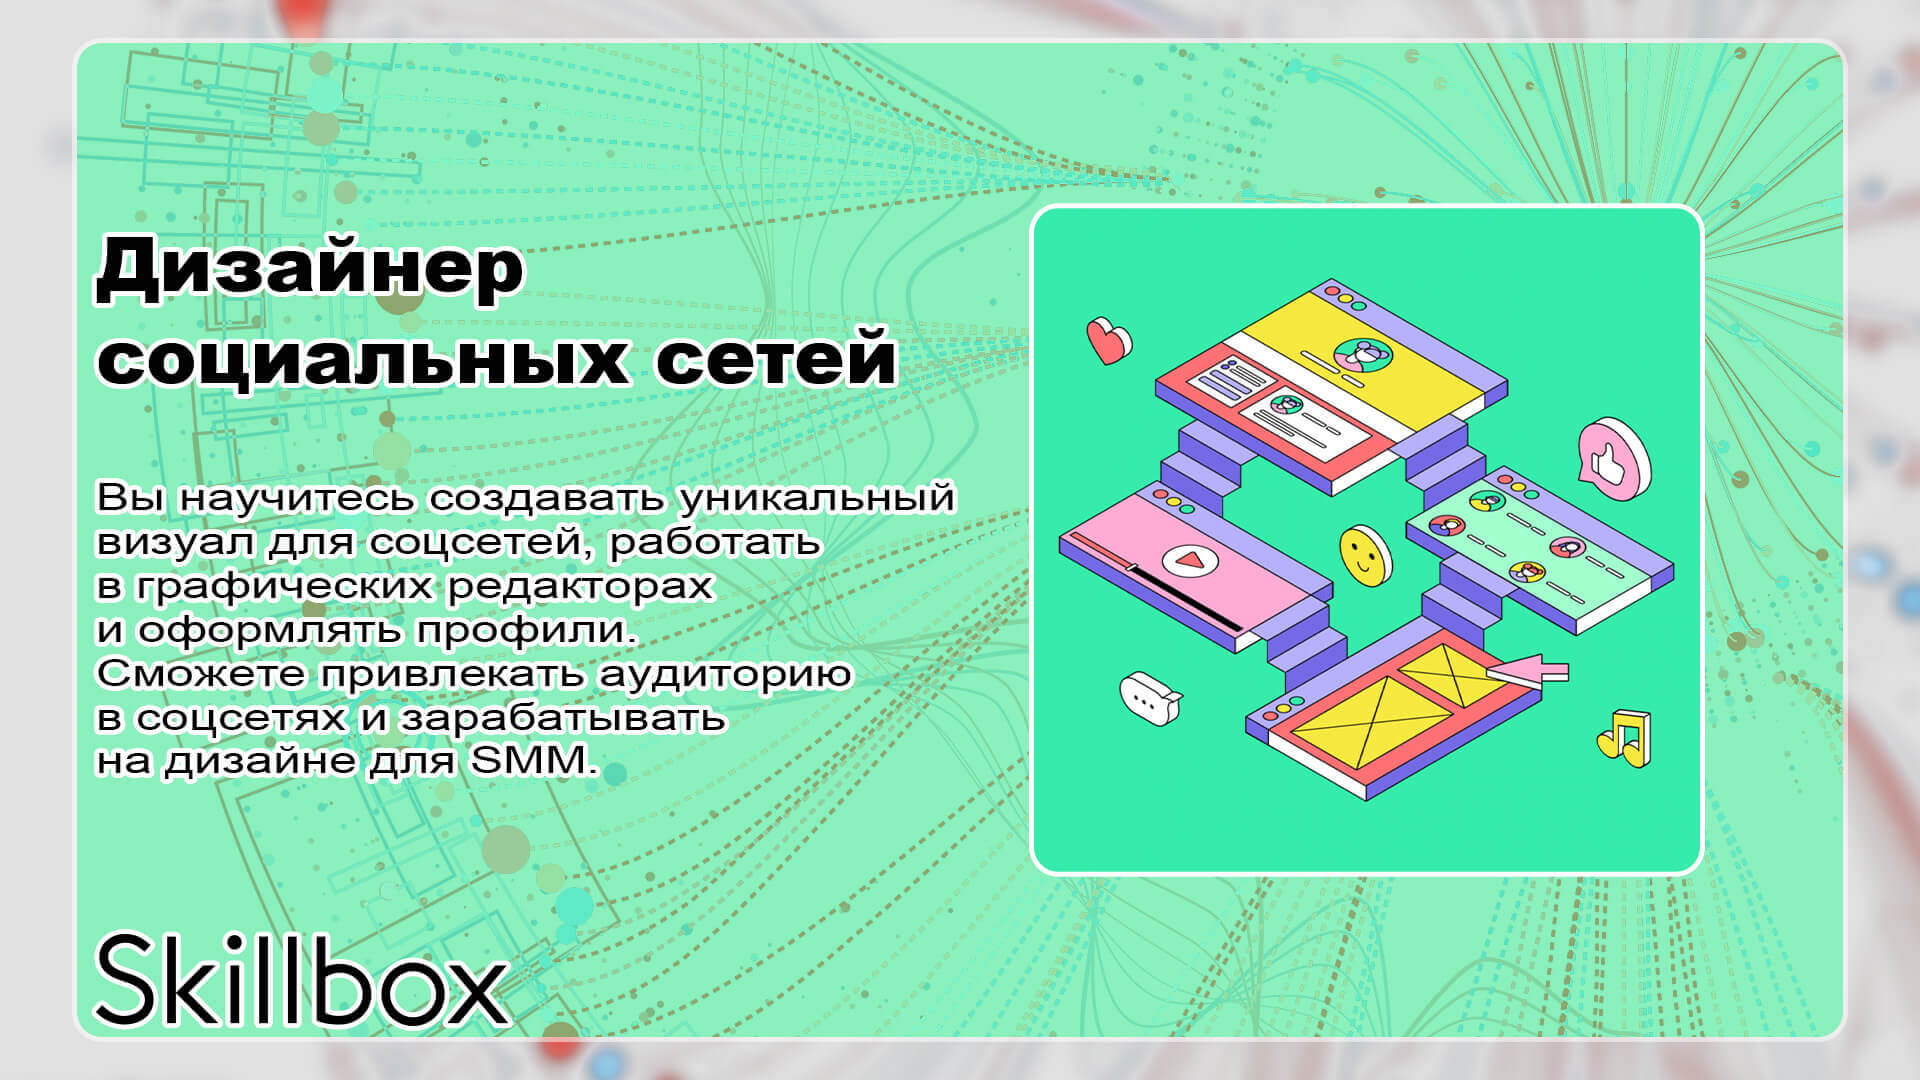 Skillbox — Дизайнер социальных сетей